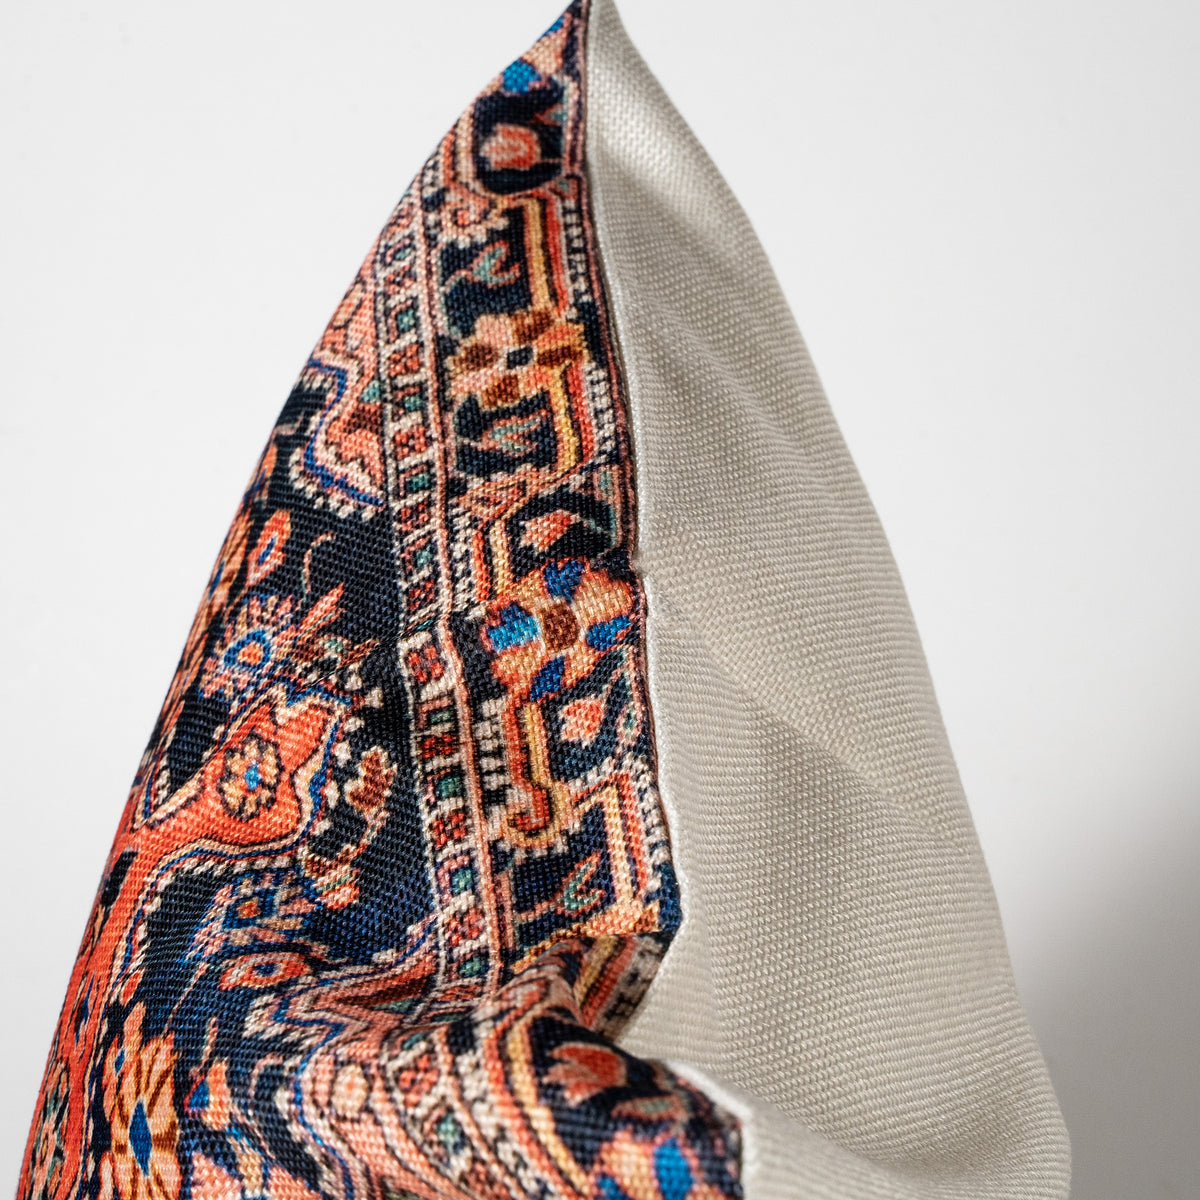 Bohemian Style Pillow - Djosan Poshti West Persian Rug Print Linen Case